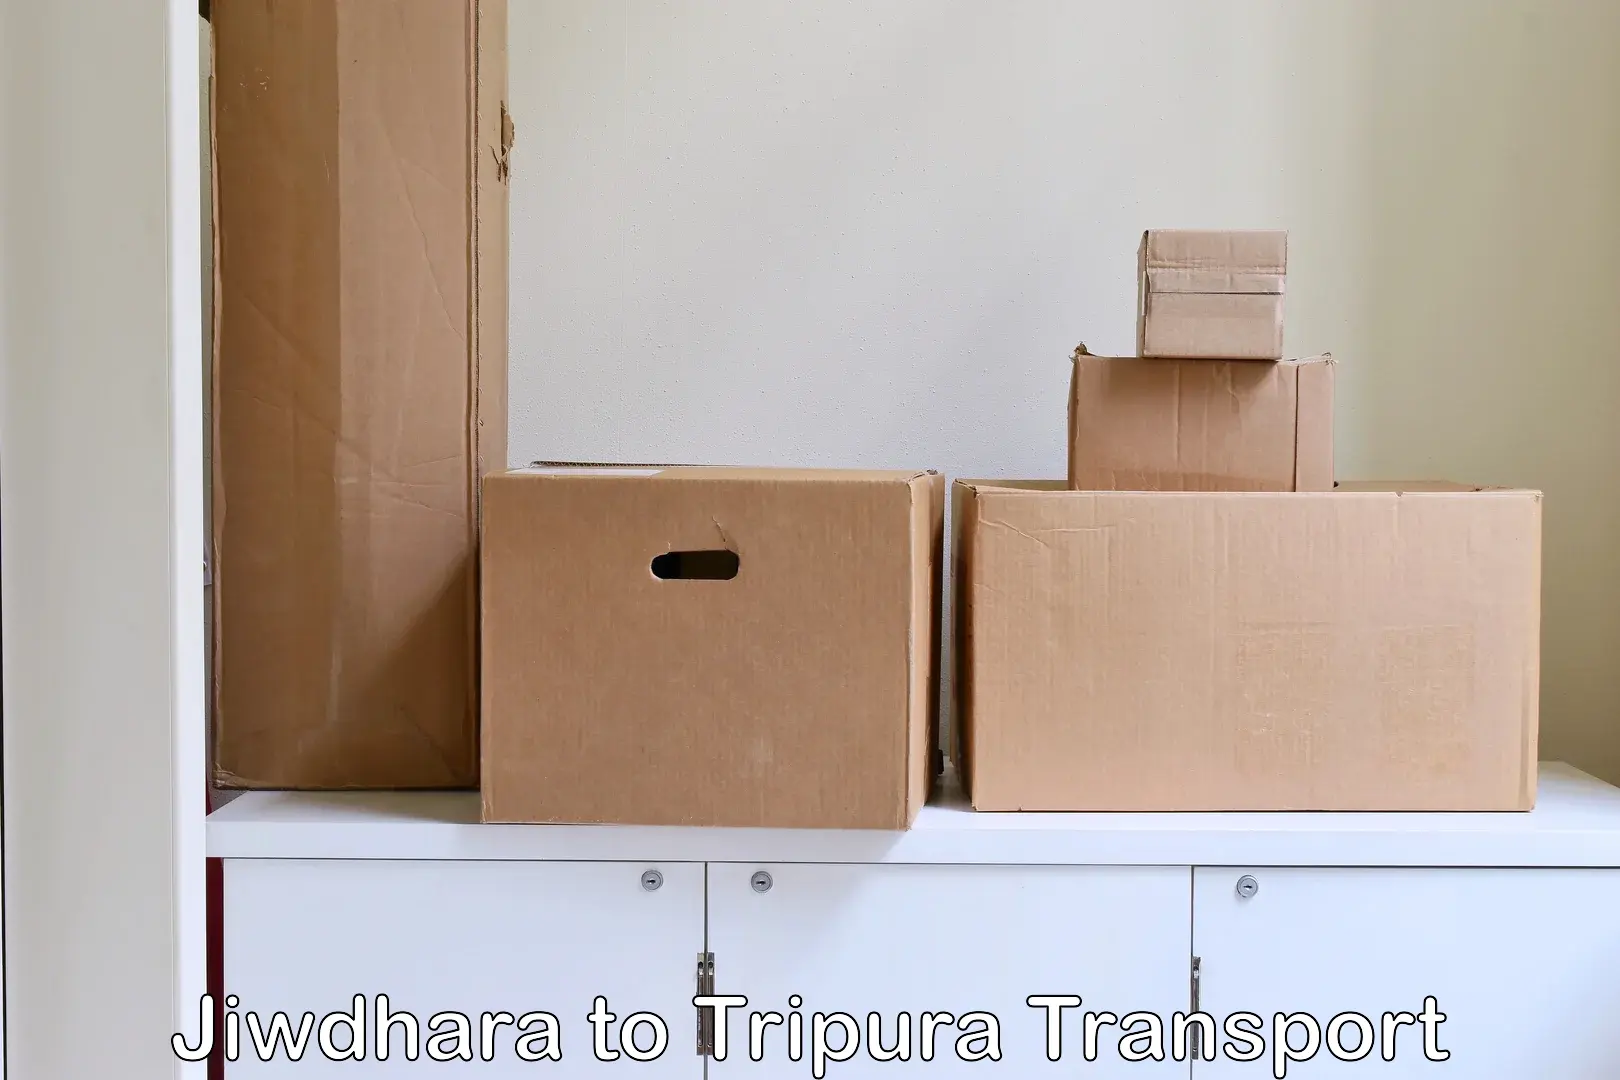 Container transport service Jiwdhara to Sonamura